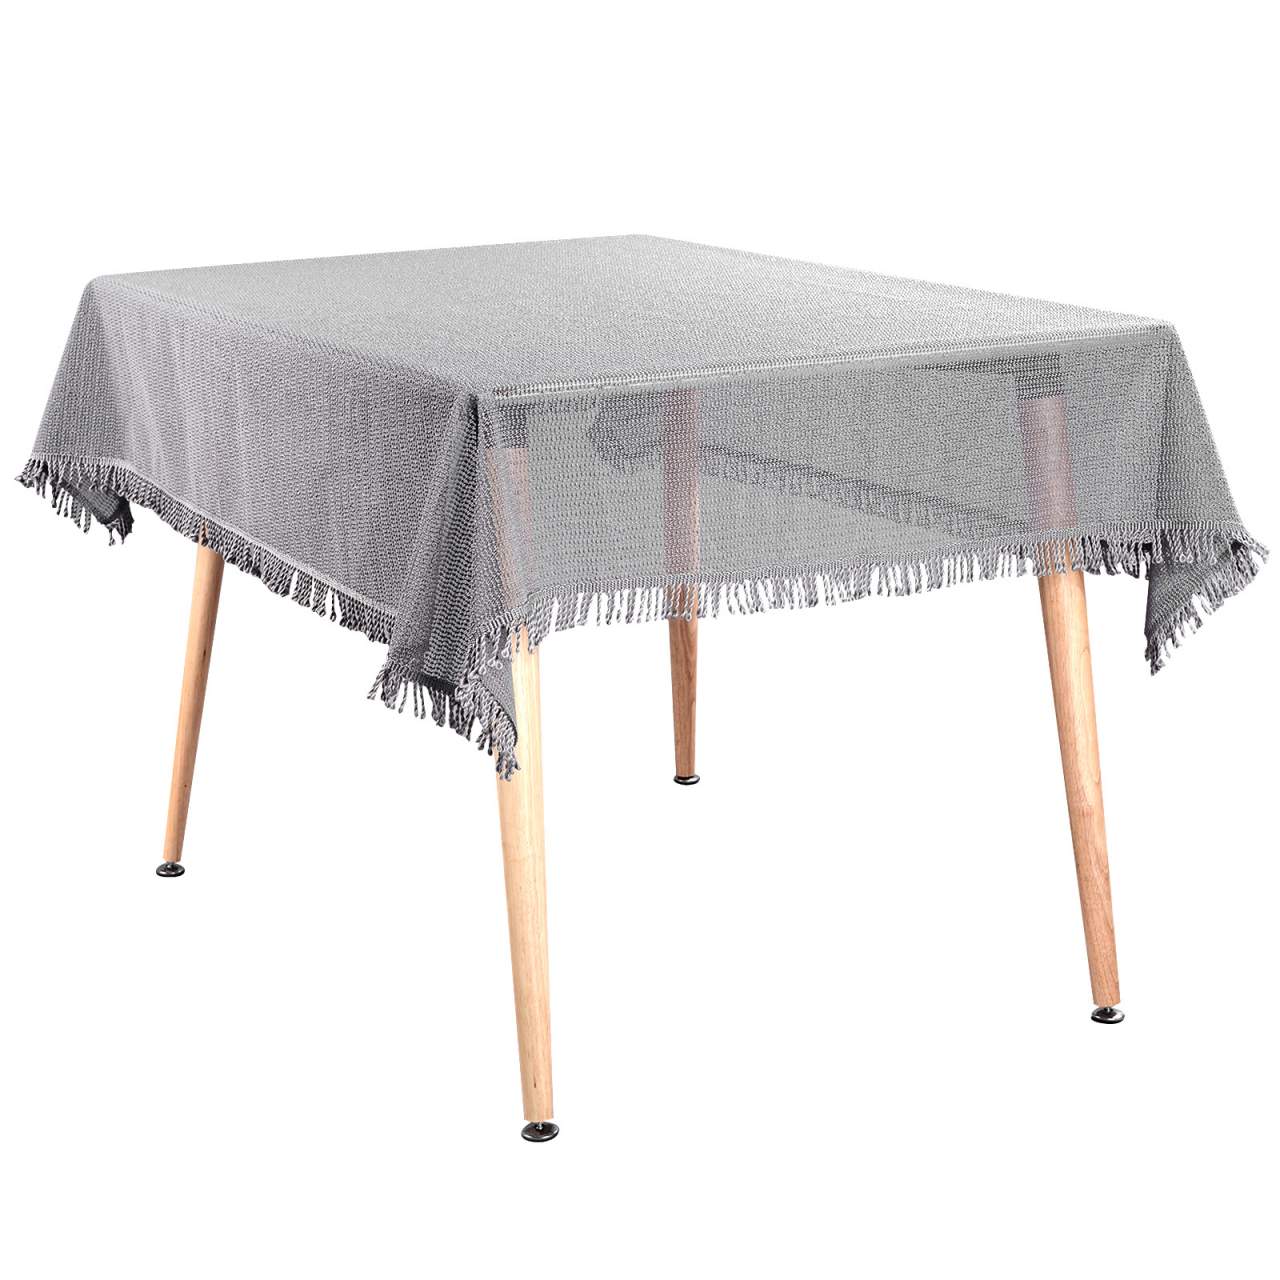 Garten sofa Elegant Garden Tablecloth soft Foam with Tassel Foamed Weatherproof Light Gray